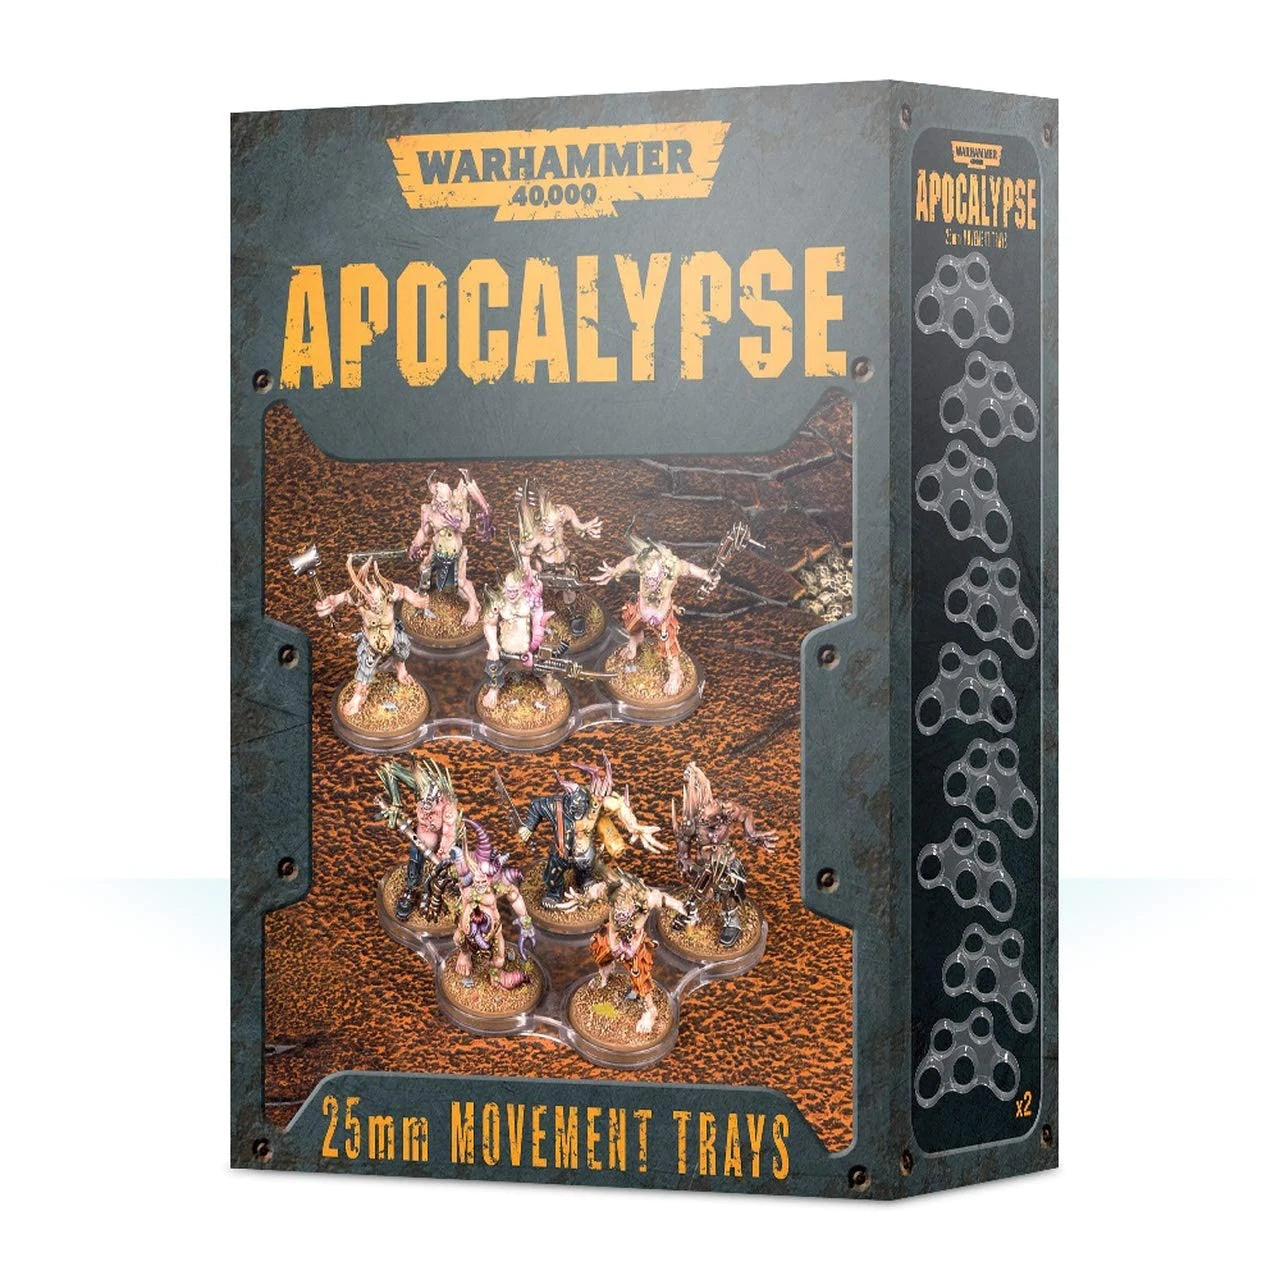 Warhammer 40K Apocalypse 25mm Movement trays | Gopher Games